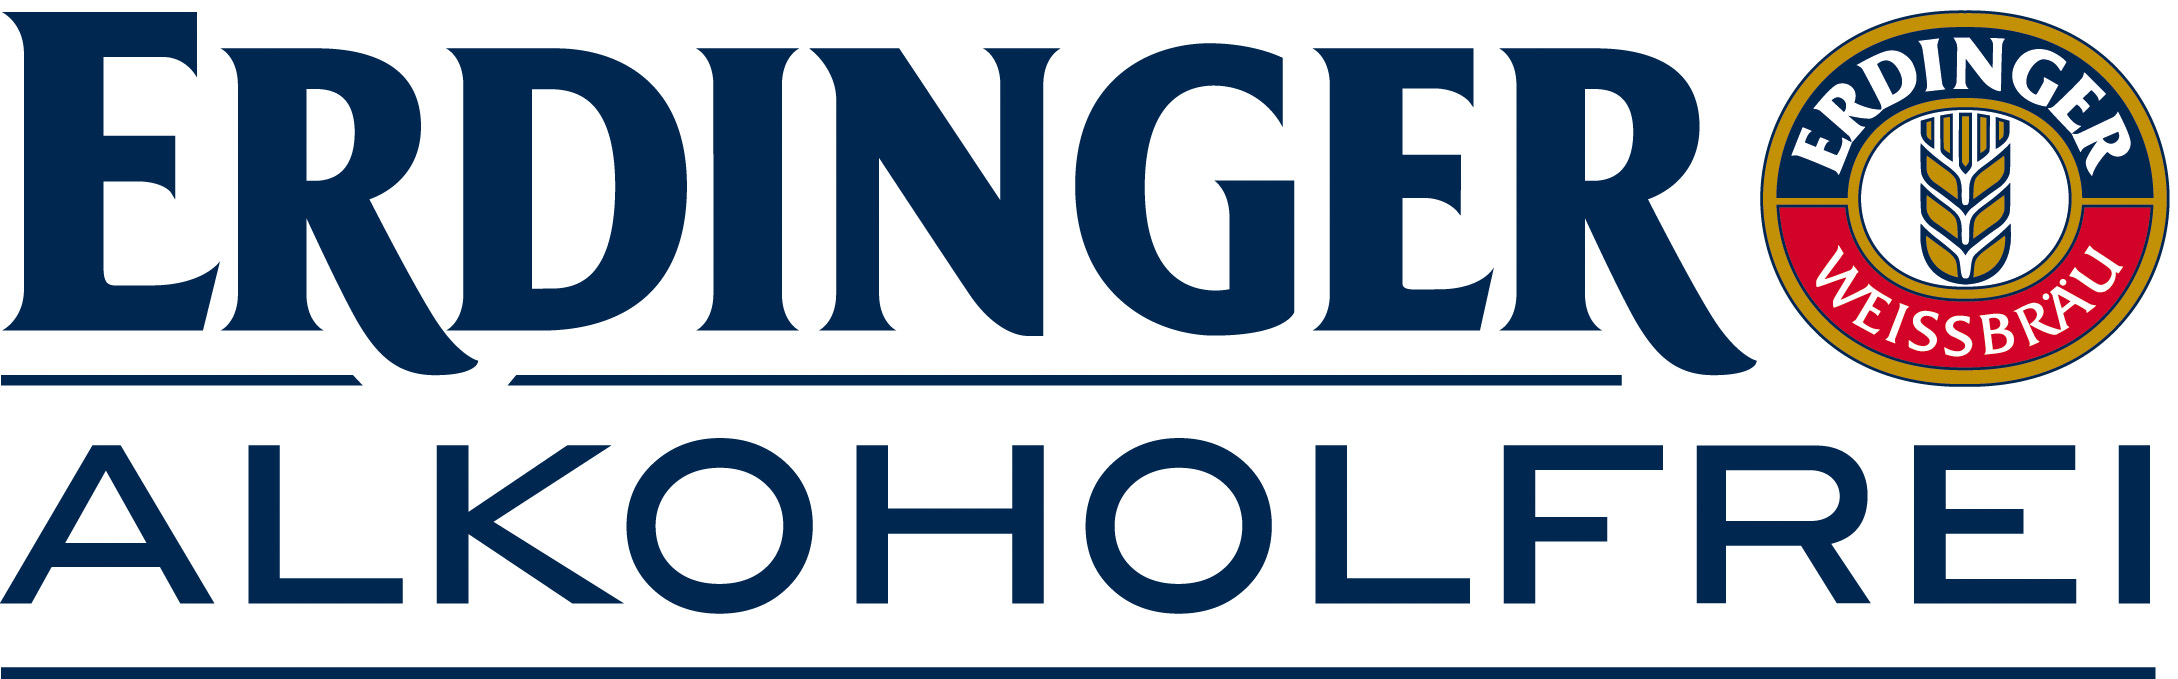 Logo Erdinger Alkoholfrei